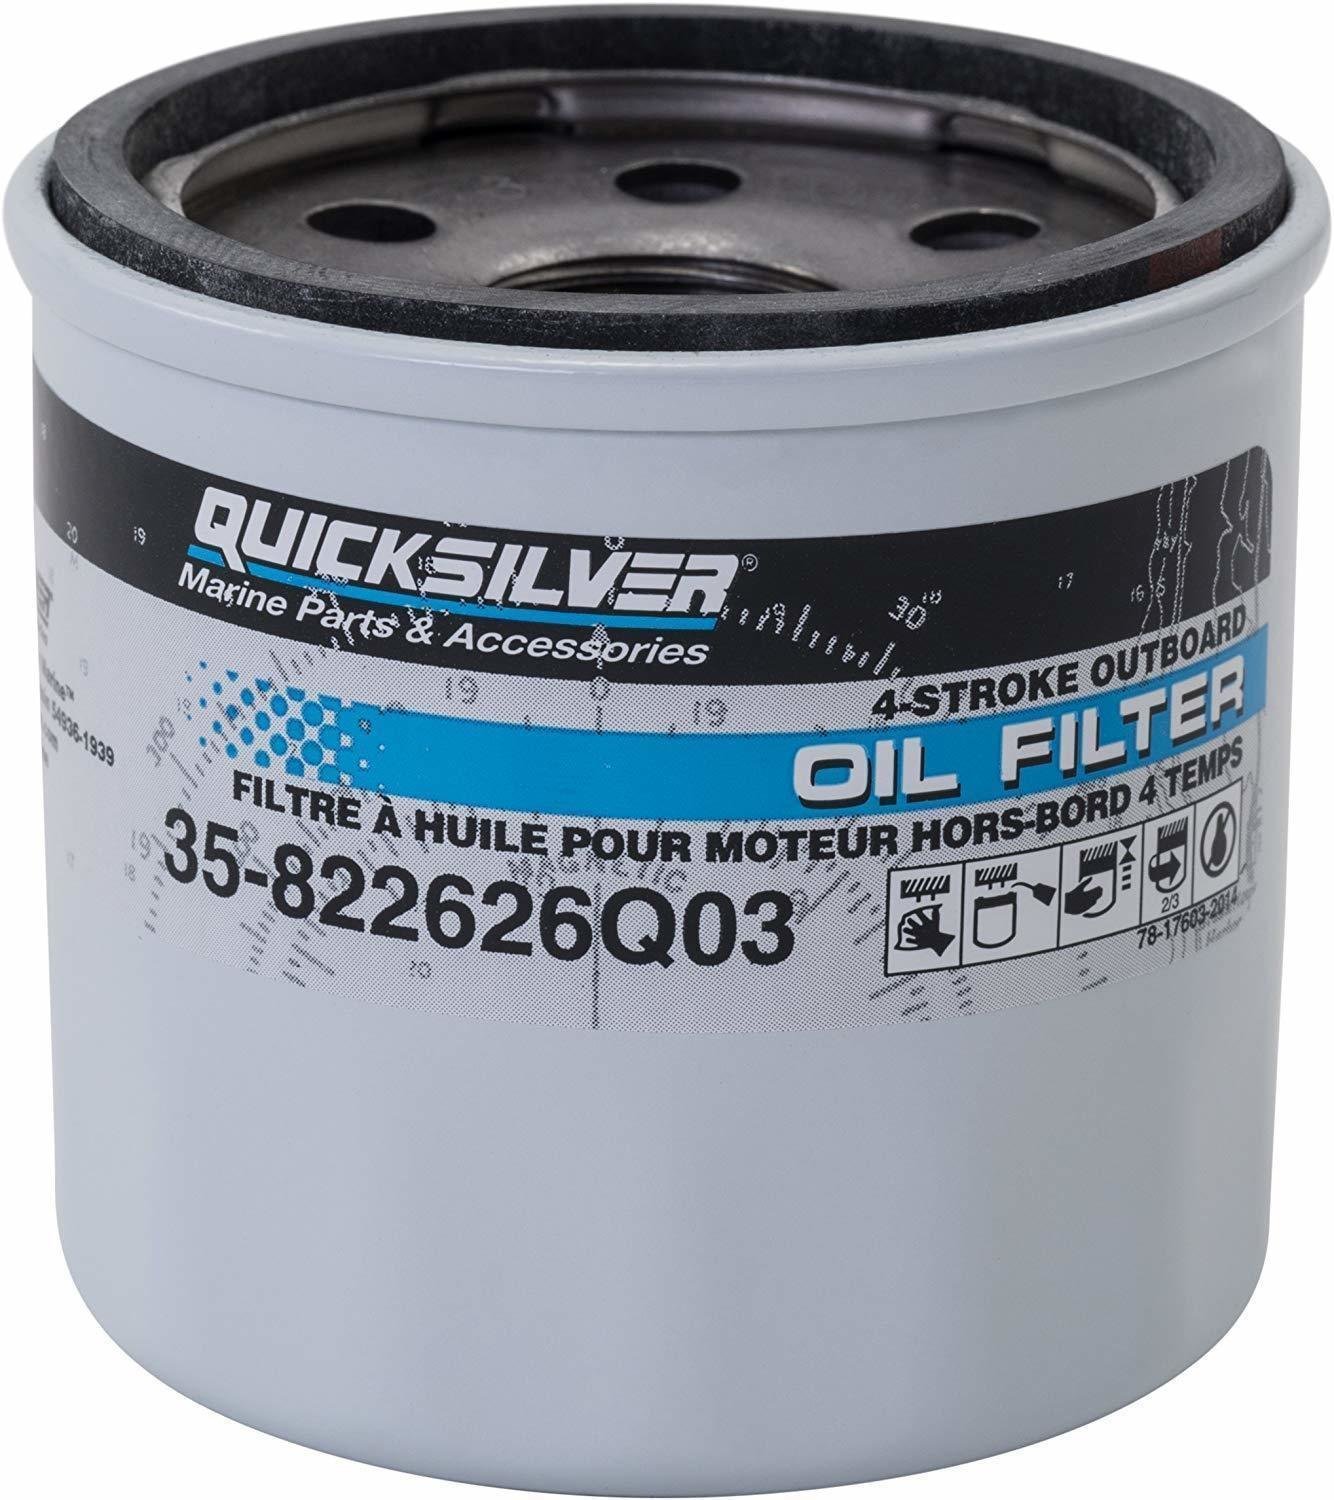 Filtri / odstranjevalci vode Quicksilver Oil Filter 35-8M0162832